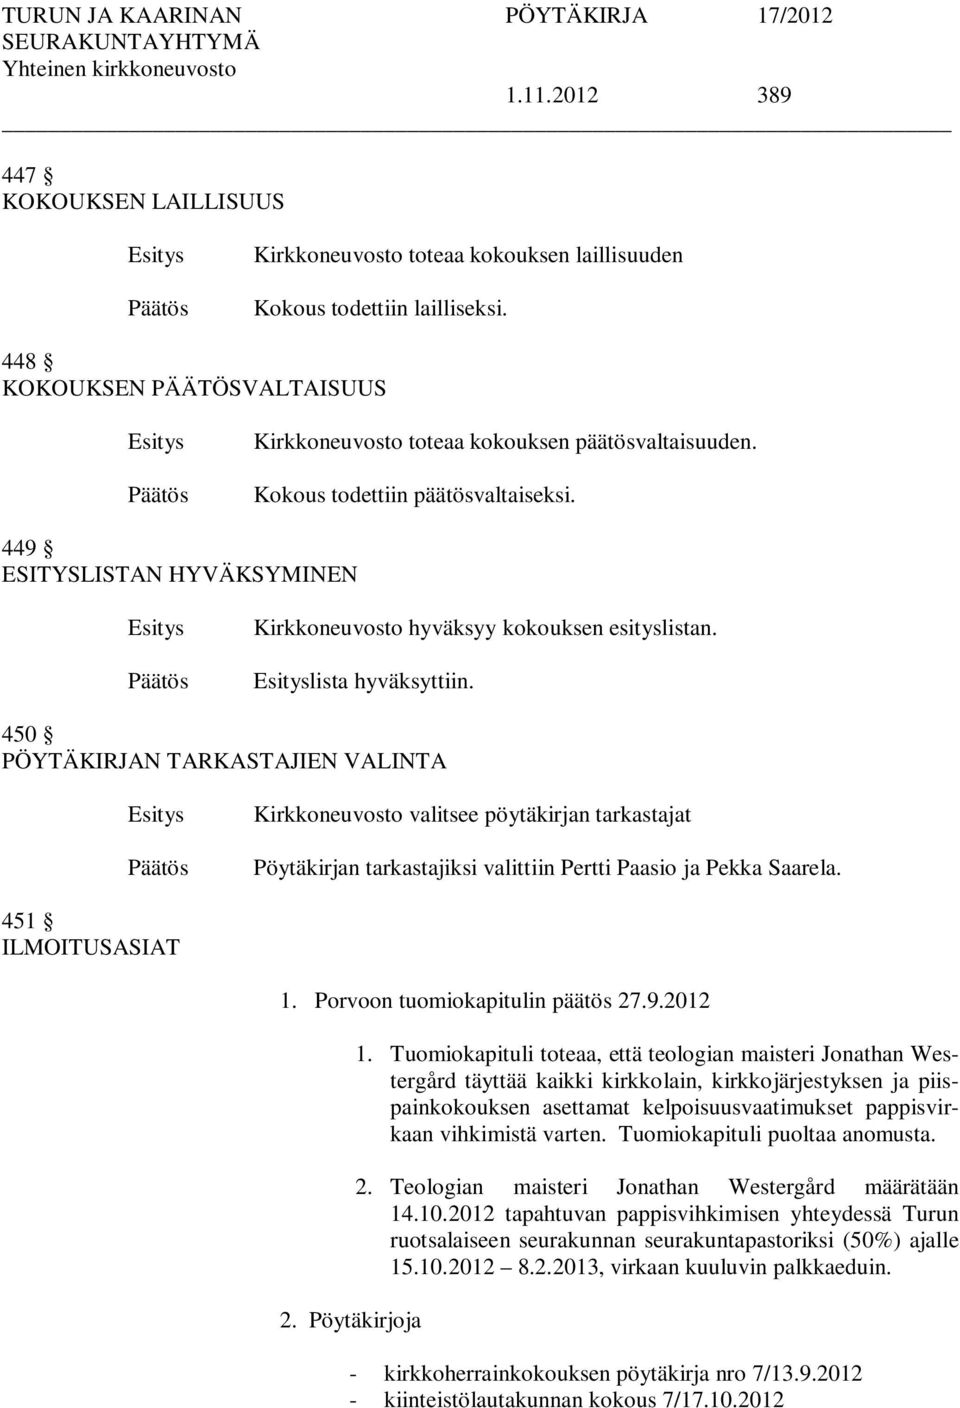 450 PÖYTÄKIRJAN TARKASTAJIEN VALINTA Kirkkoneuvosto valitsee pöytäkirjan tarkastajat Pöytäkirjan tarkastajiksi valittiin Pertti Paasio ja Pekka Saarela. 451 ILMOITUSASIAT 1.